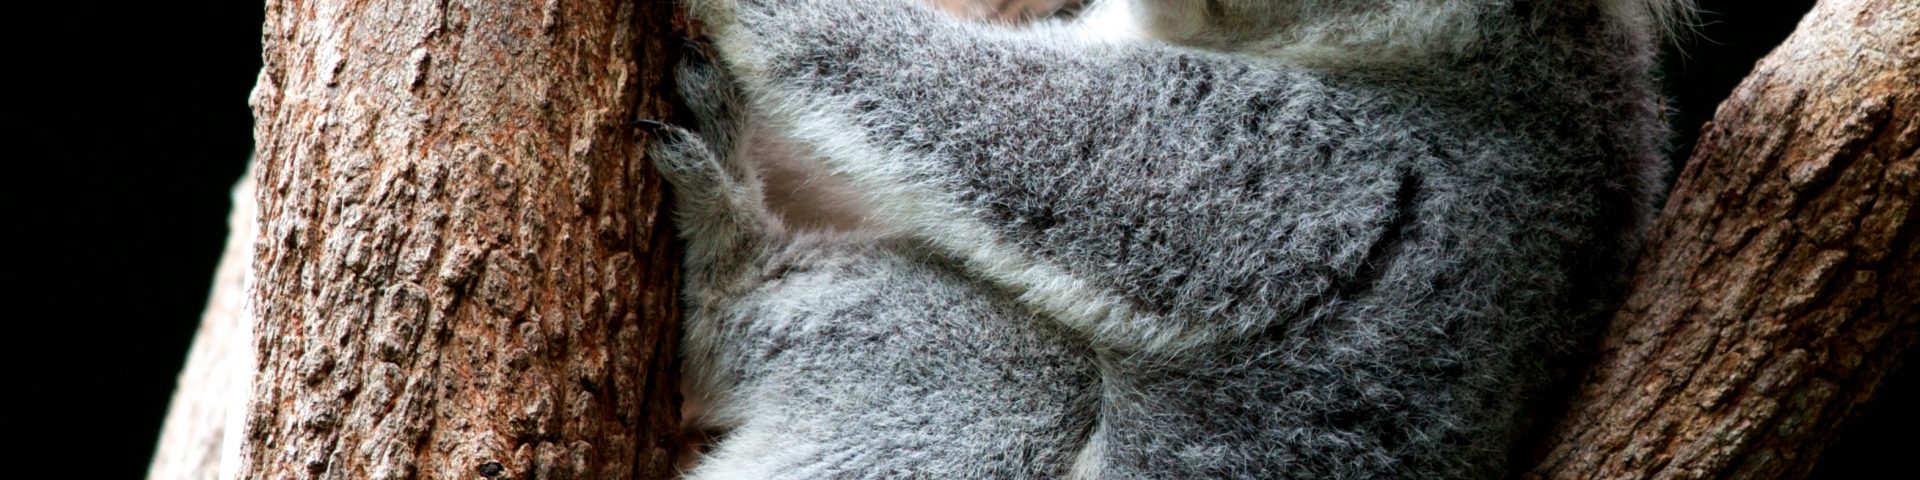 Ausztráliában drónokkal mérik fel a koala populációt.